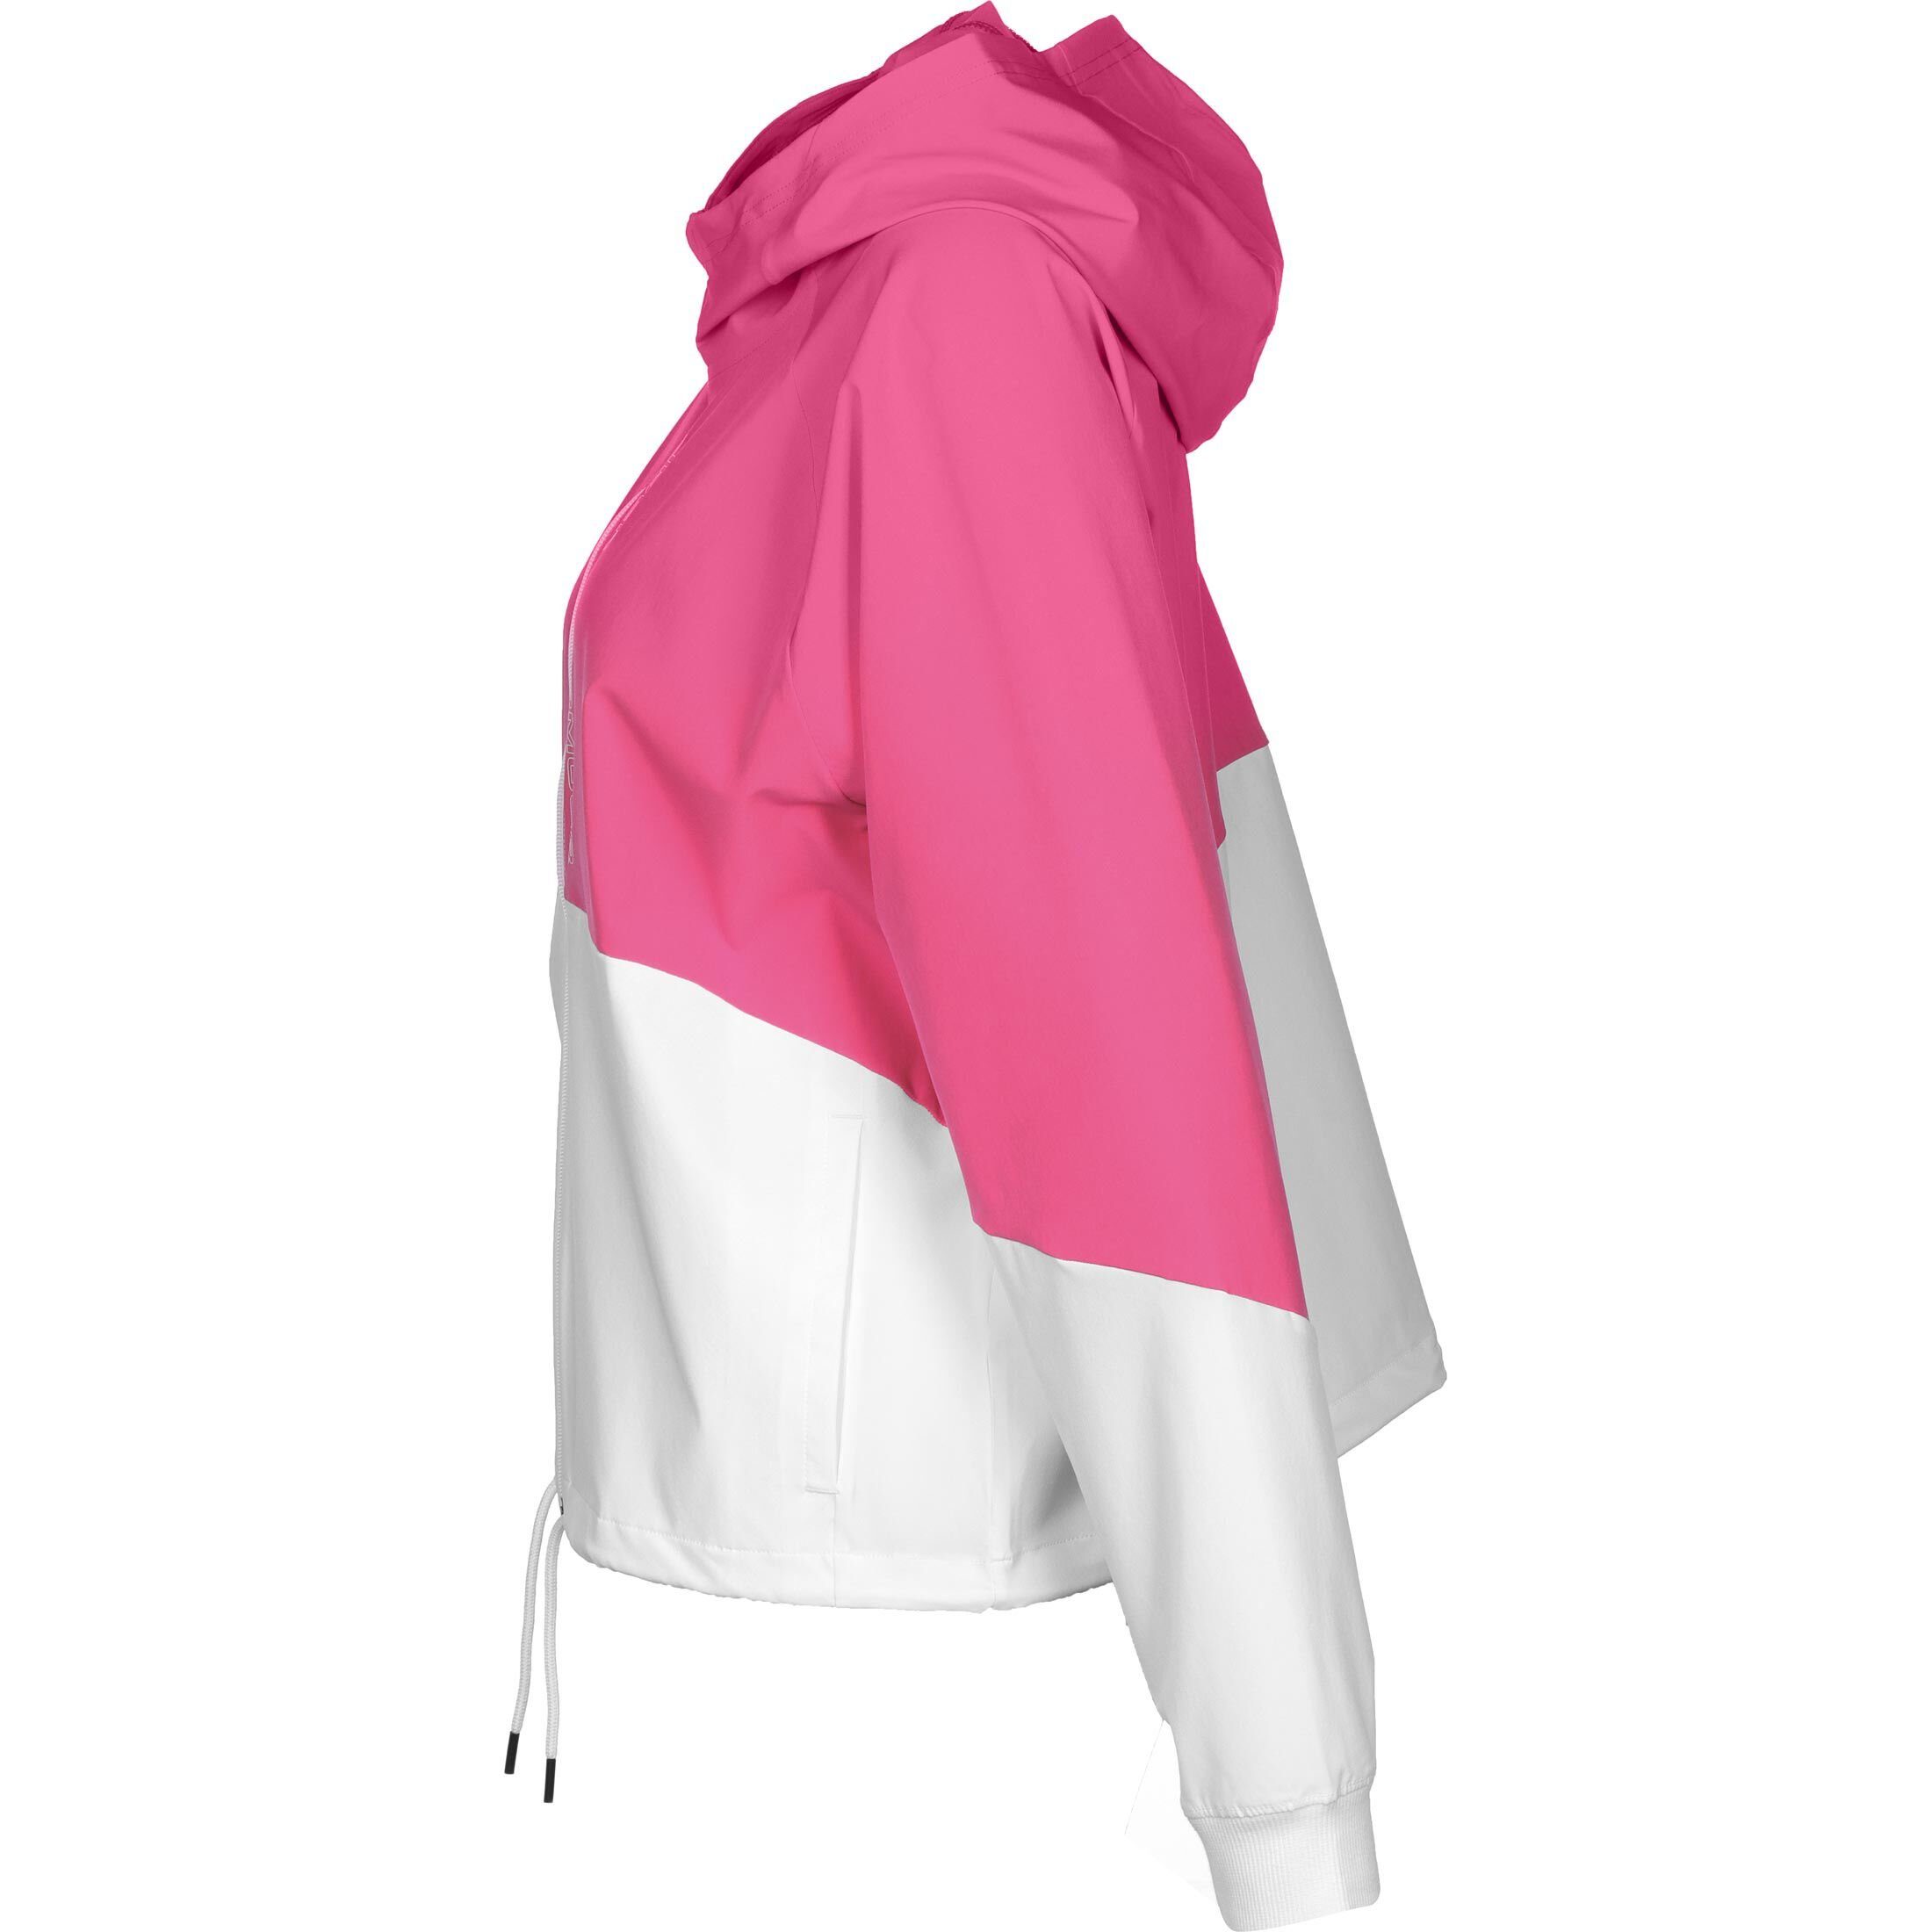 Under Armour® Trainingsjacke Woven / Damen pink Jacke weiß